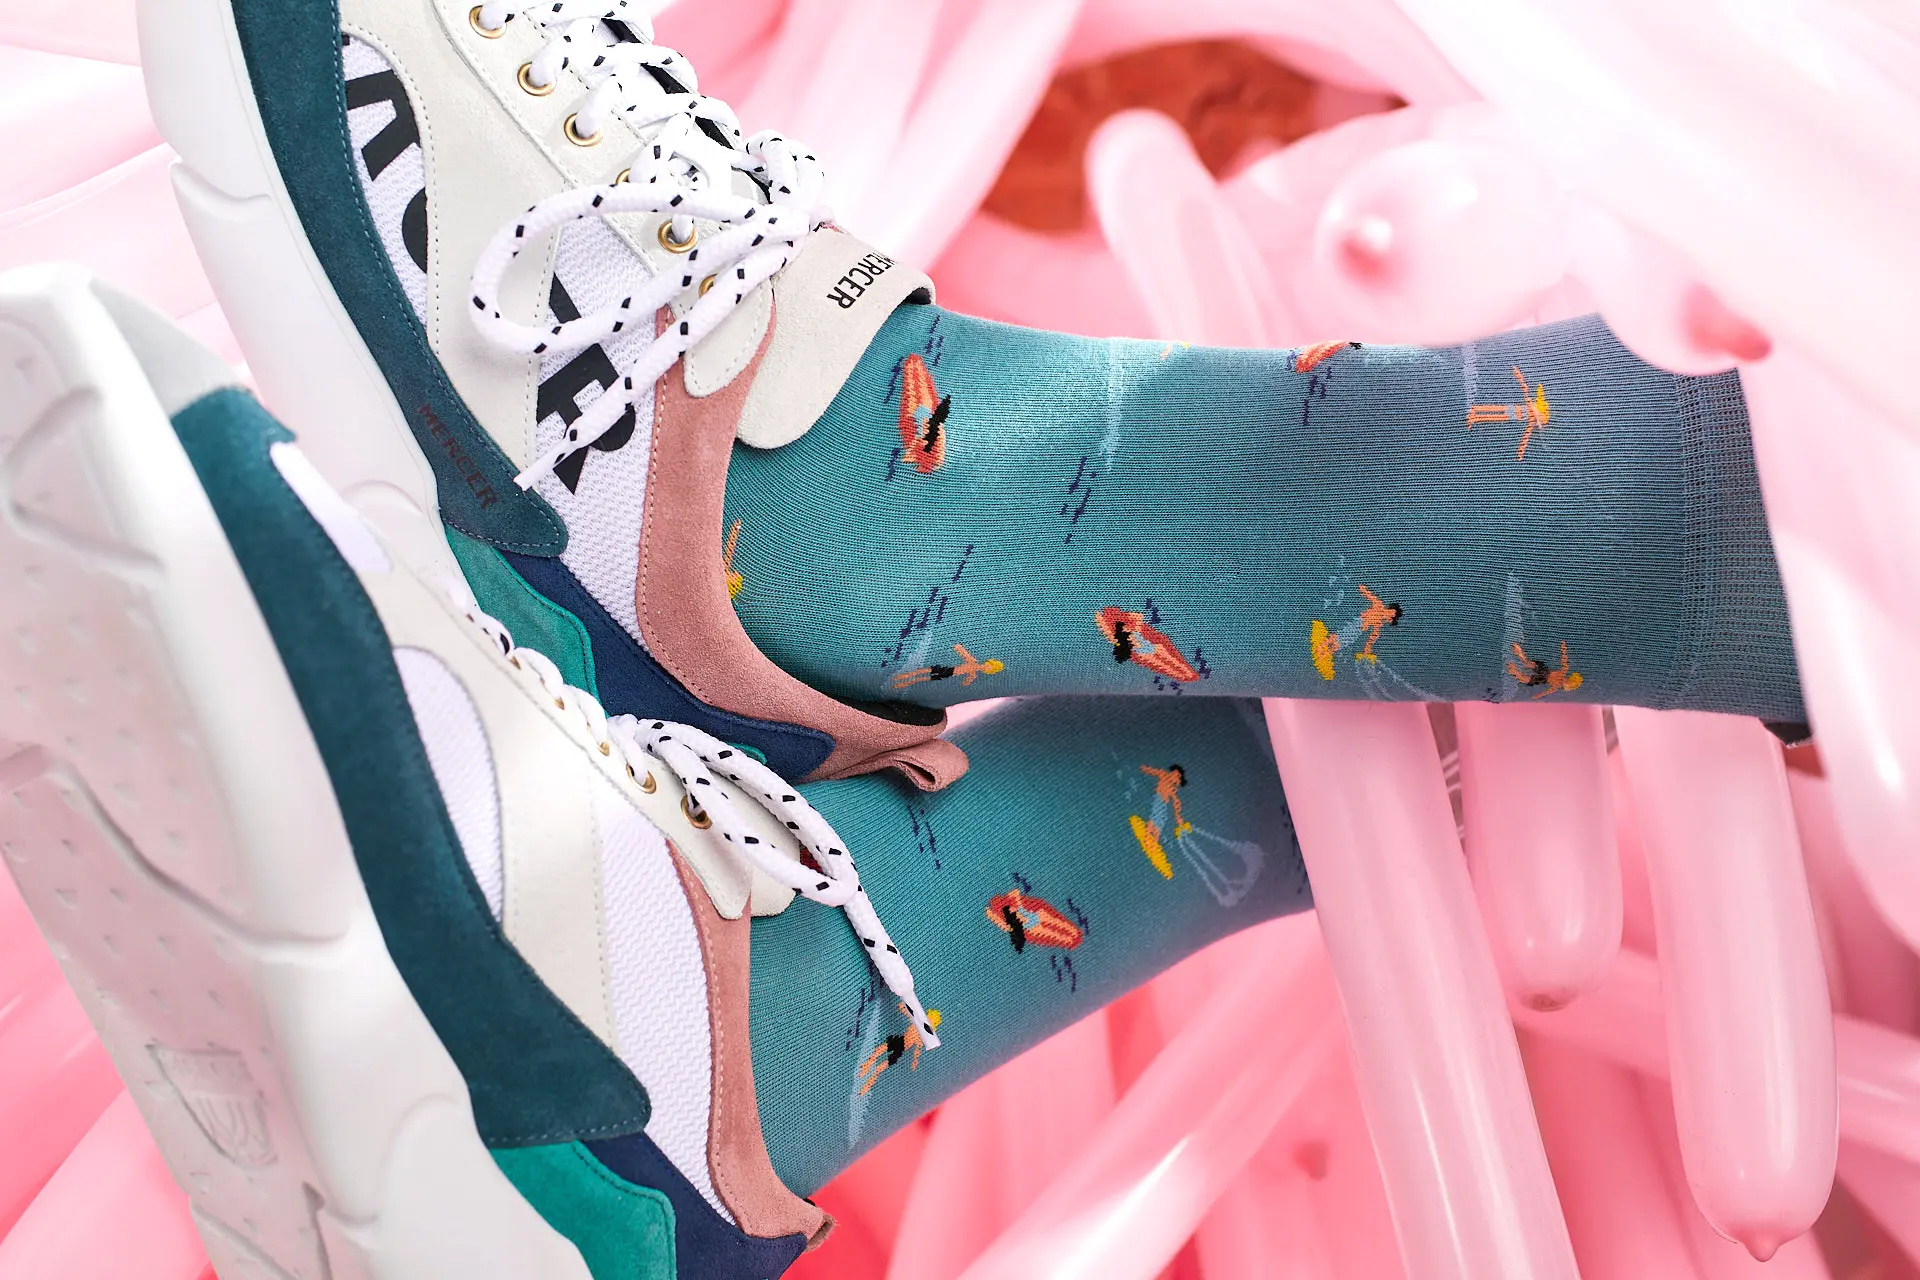 von Jungfeld bietet coole Socken und bunte Socken für Herren und Damen